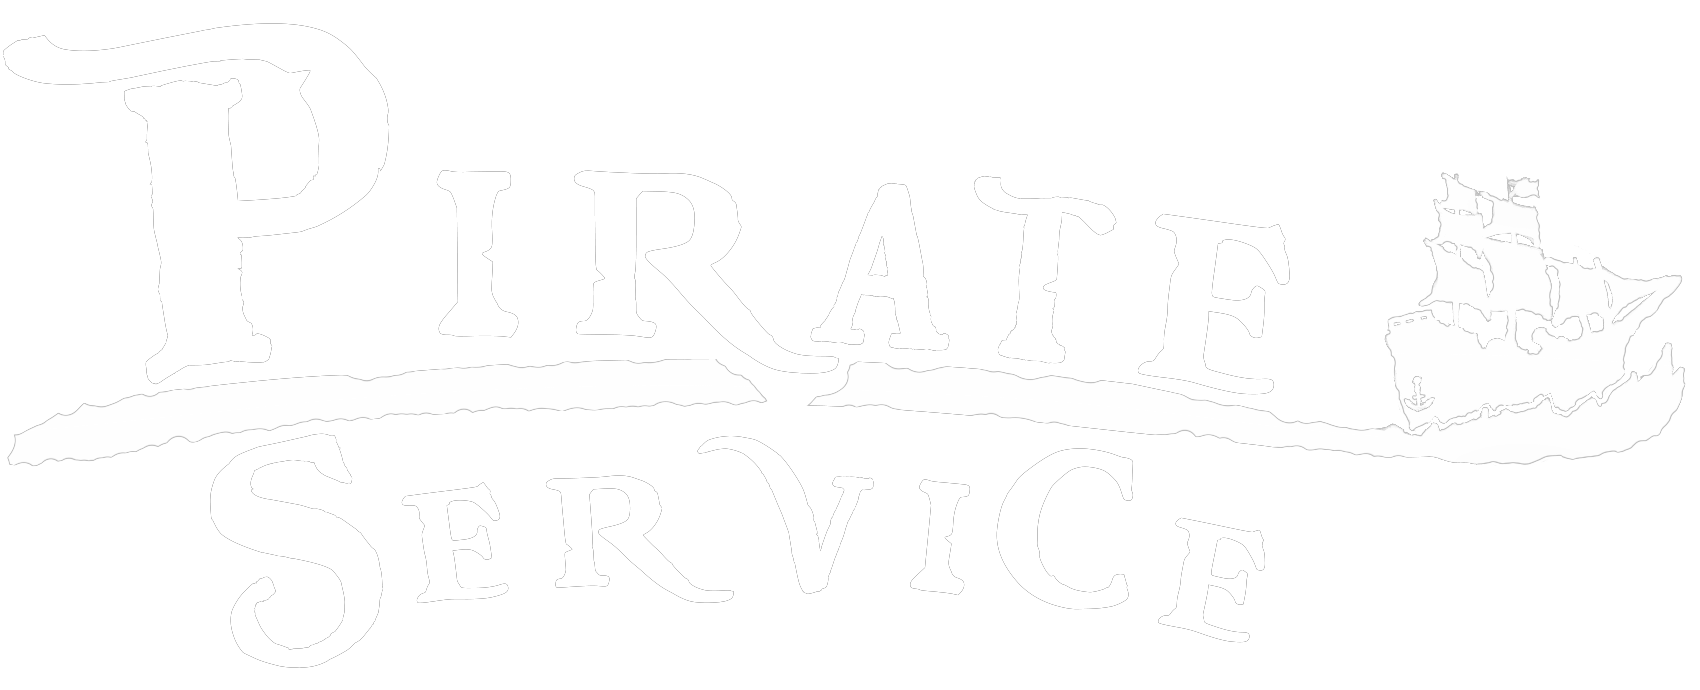 Pirate Service